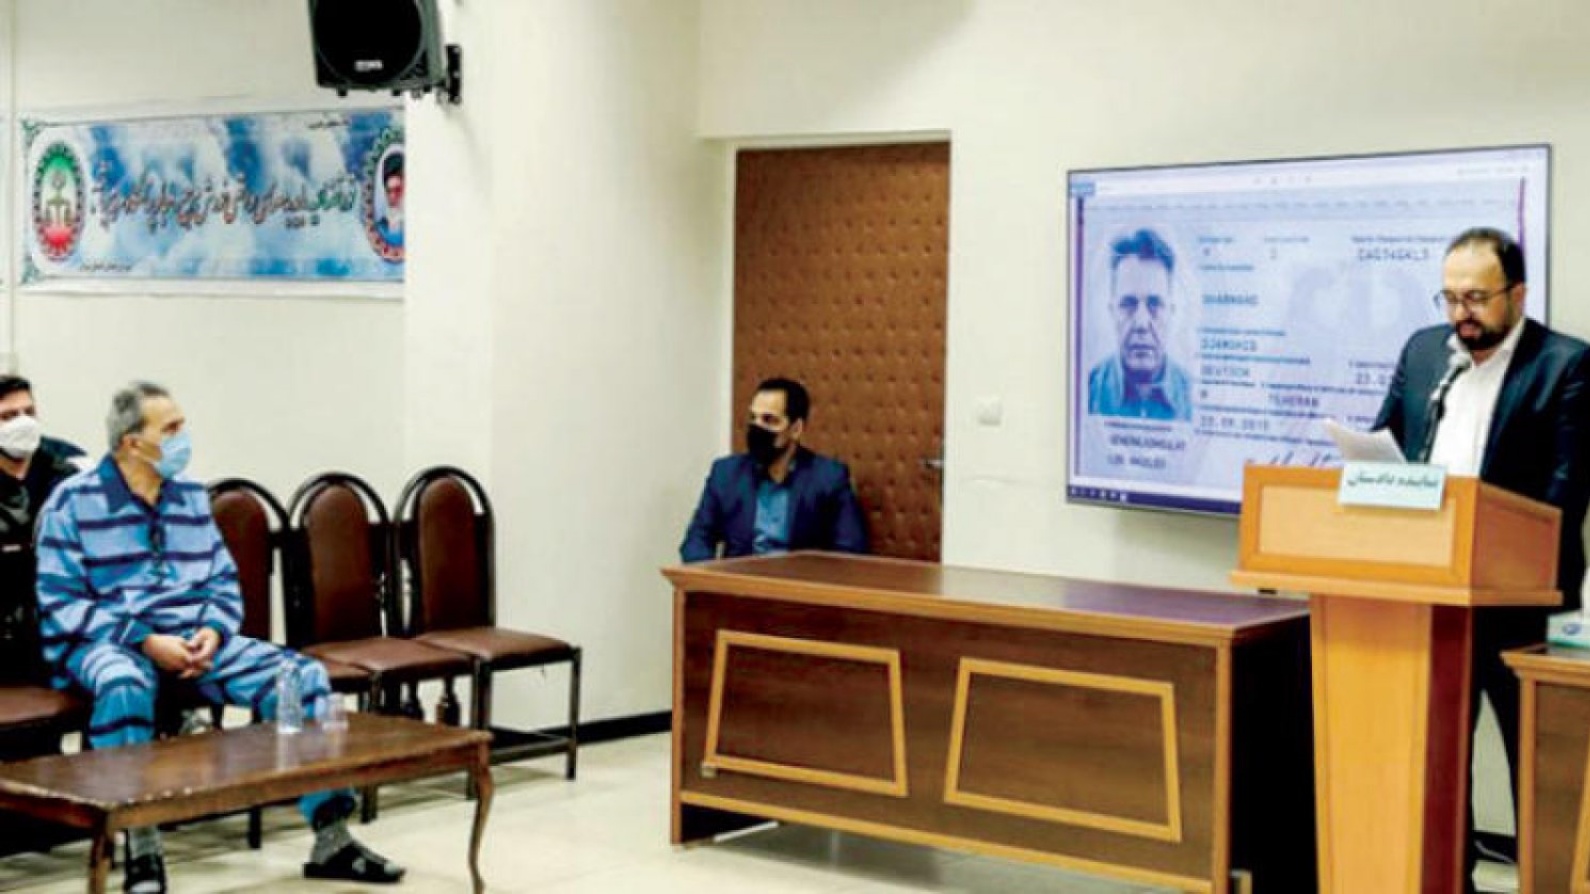 جمشيد شارمهد بينما يعرض جواز سفره الألماني على شاشة أثناء المحاكمة في فبراير 2022